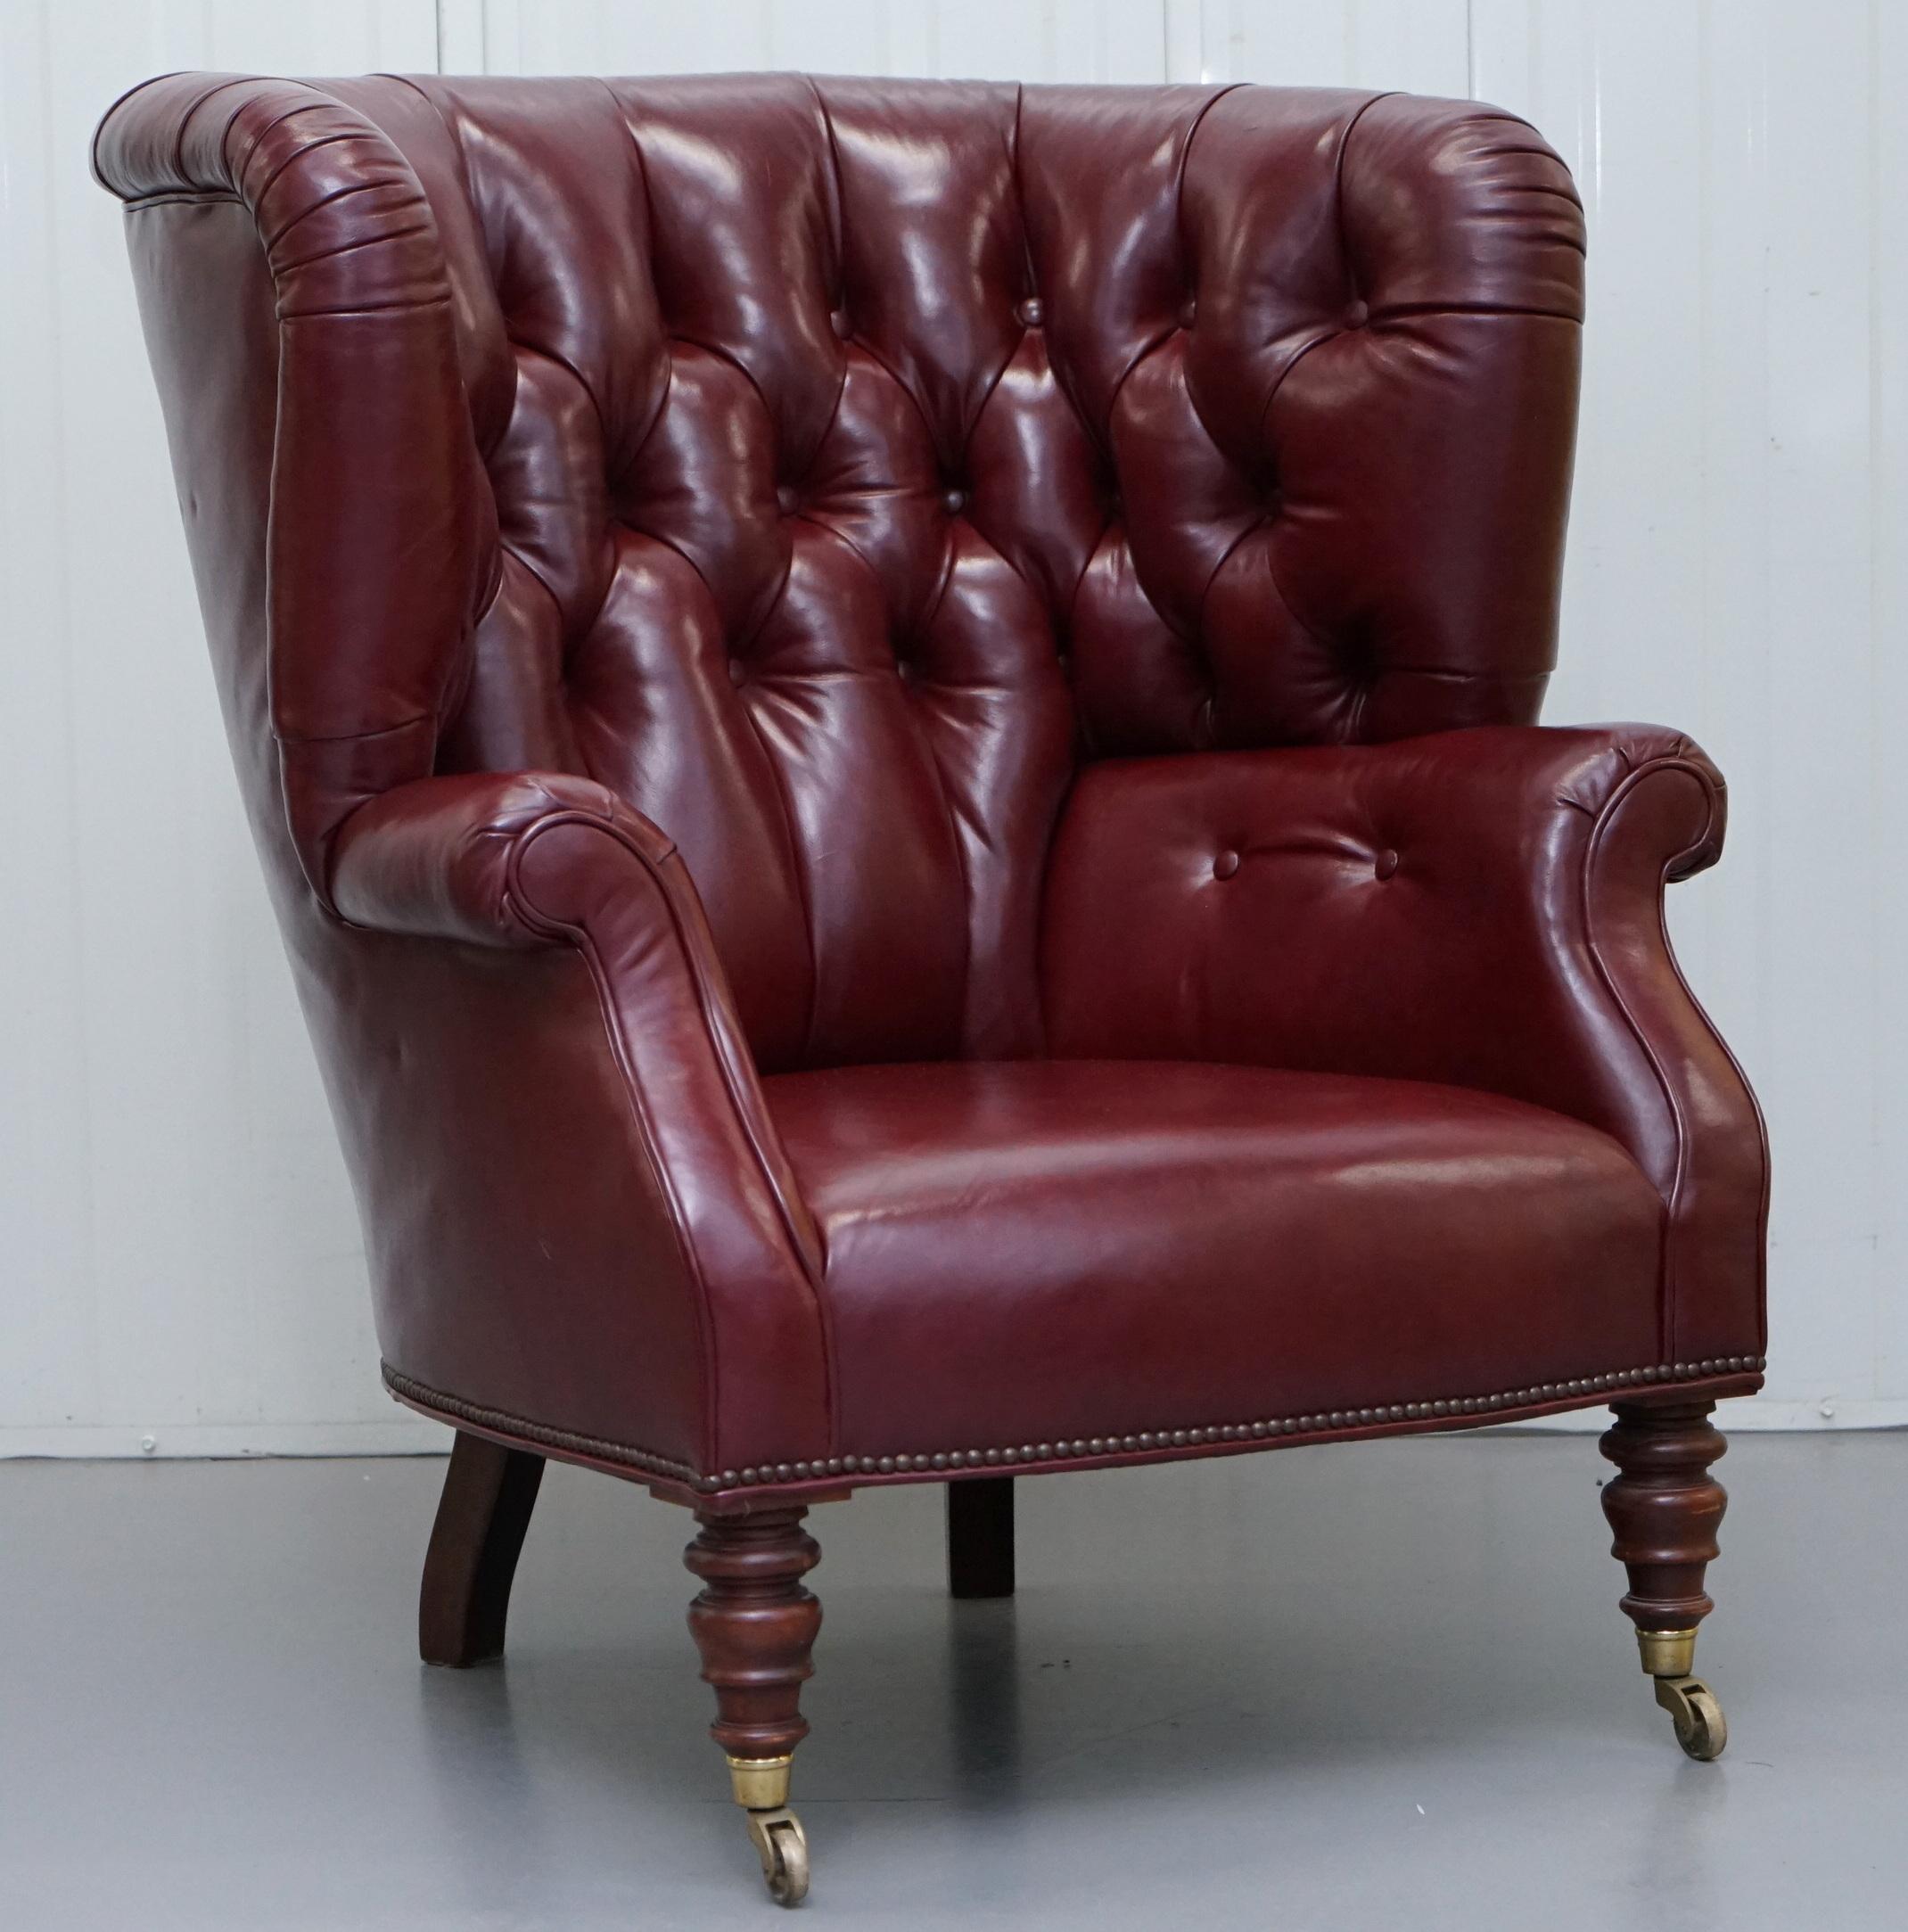 Wir sind erfreut, diese atemberaubende Original Baker Furniture Oxblood Leder Porters Barrel zurück Sessel

Ein sehr gut aussehender, dekorativer und bequemer Sessel, das Leder ist weich und dezent, das Holz handgebeizt und französisch